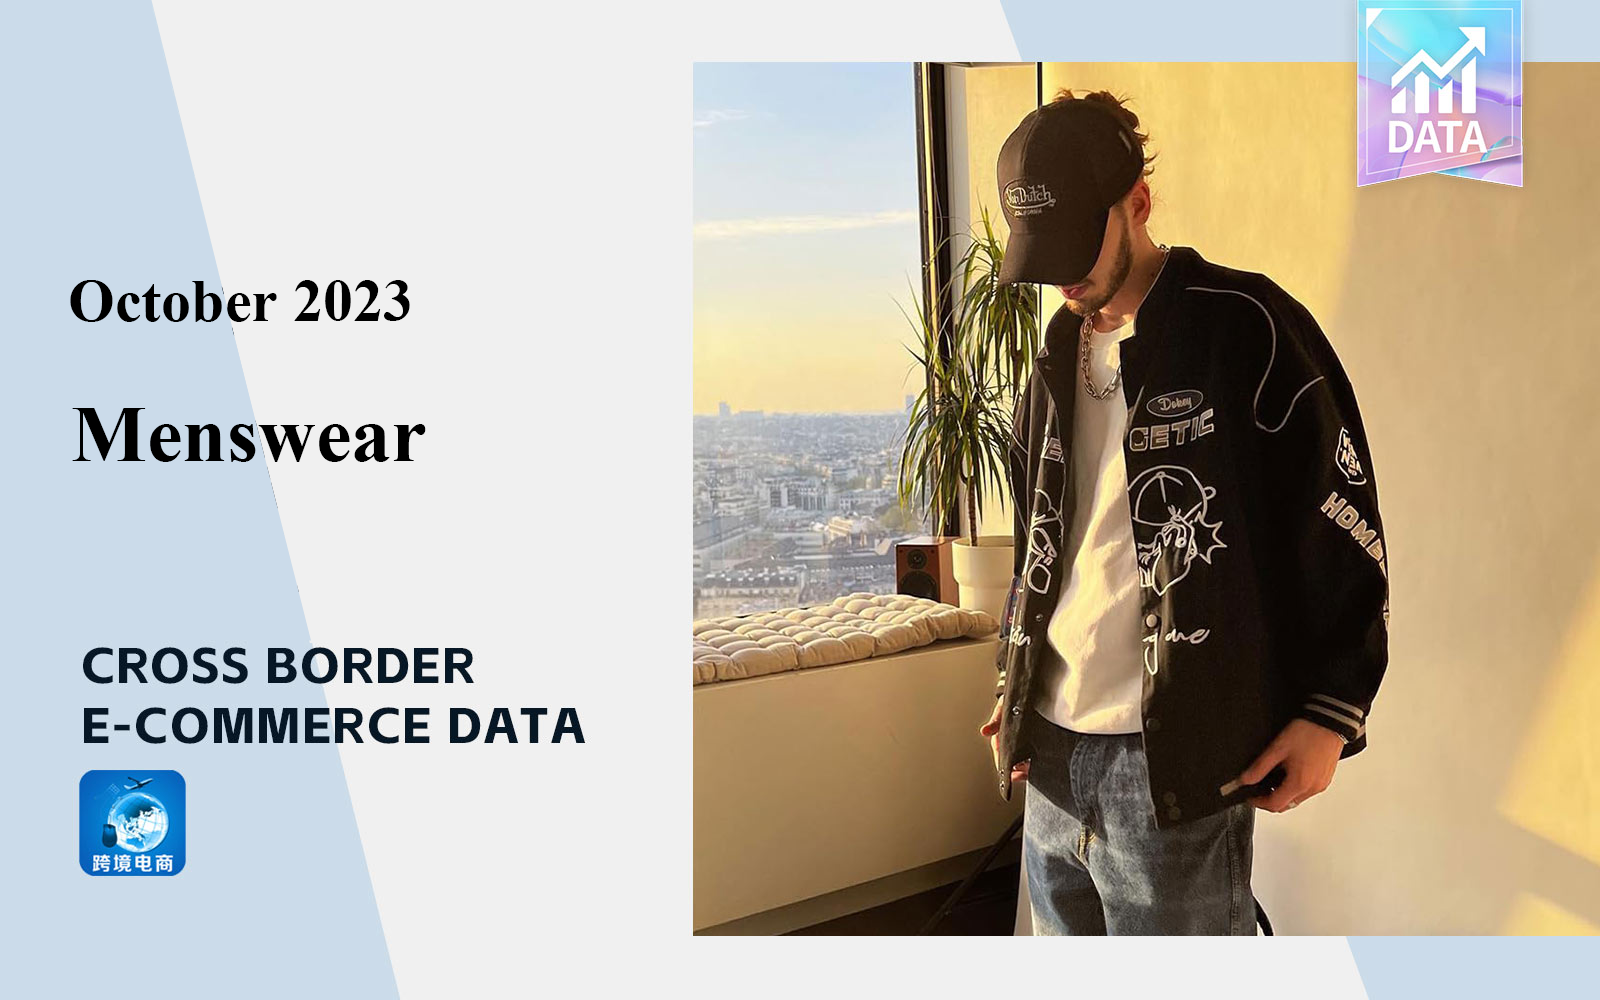 Analysis of Cross border E-commerce Data for Menswear in October